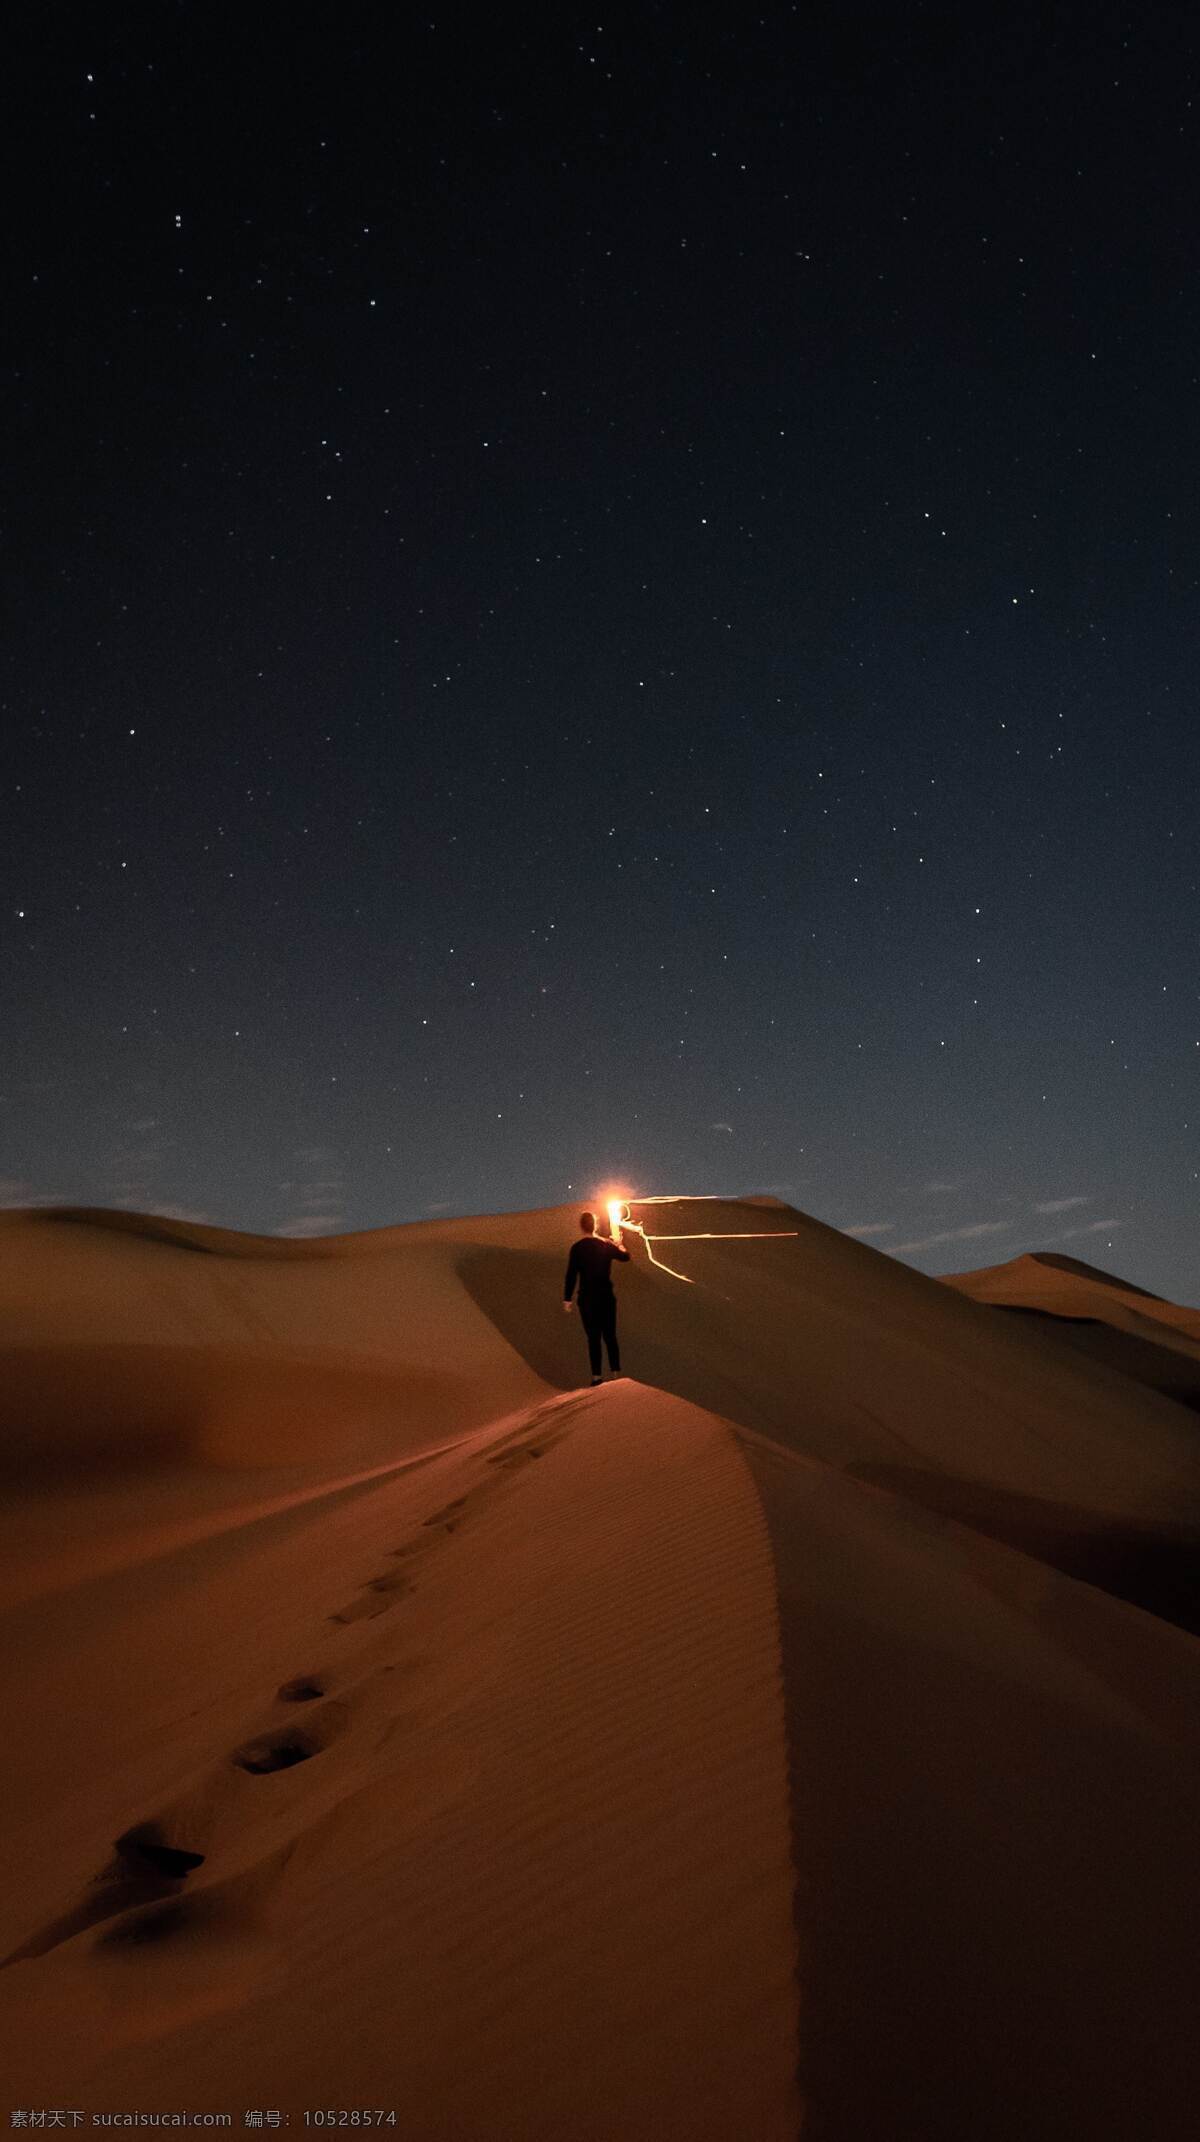 沙漠 照明 棒 人 无人区 火把 背影 沙 沙丘 点亮 亮 痕迹 星星 晚上 星空 夜晚 探险 光线 发光 人物 人物图库 女性女人